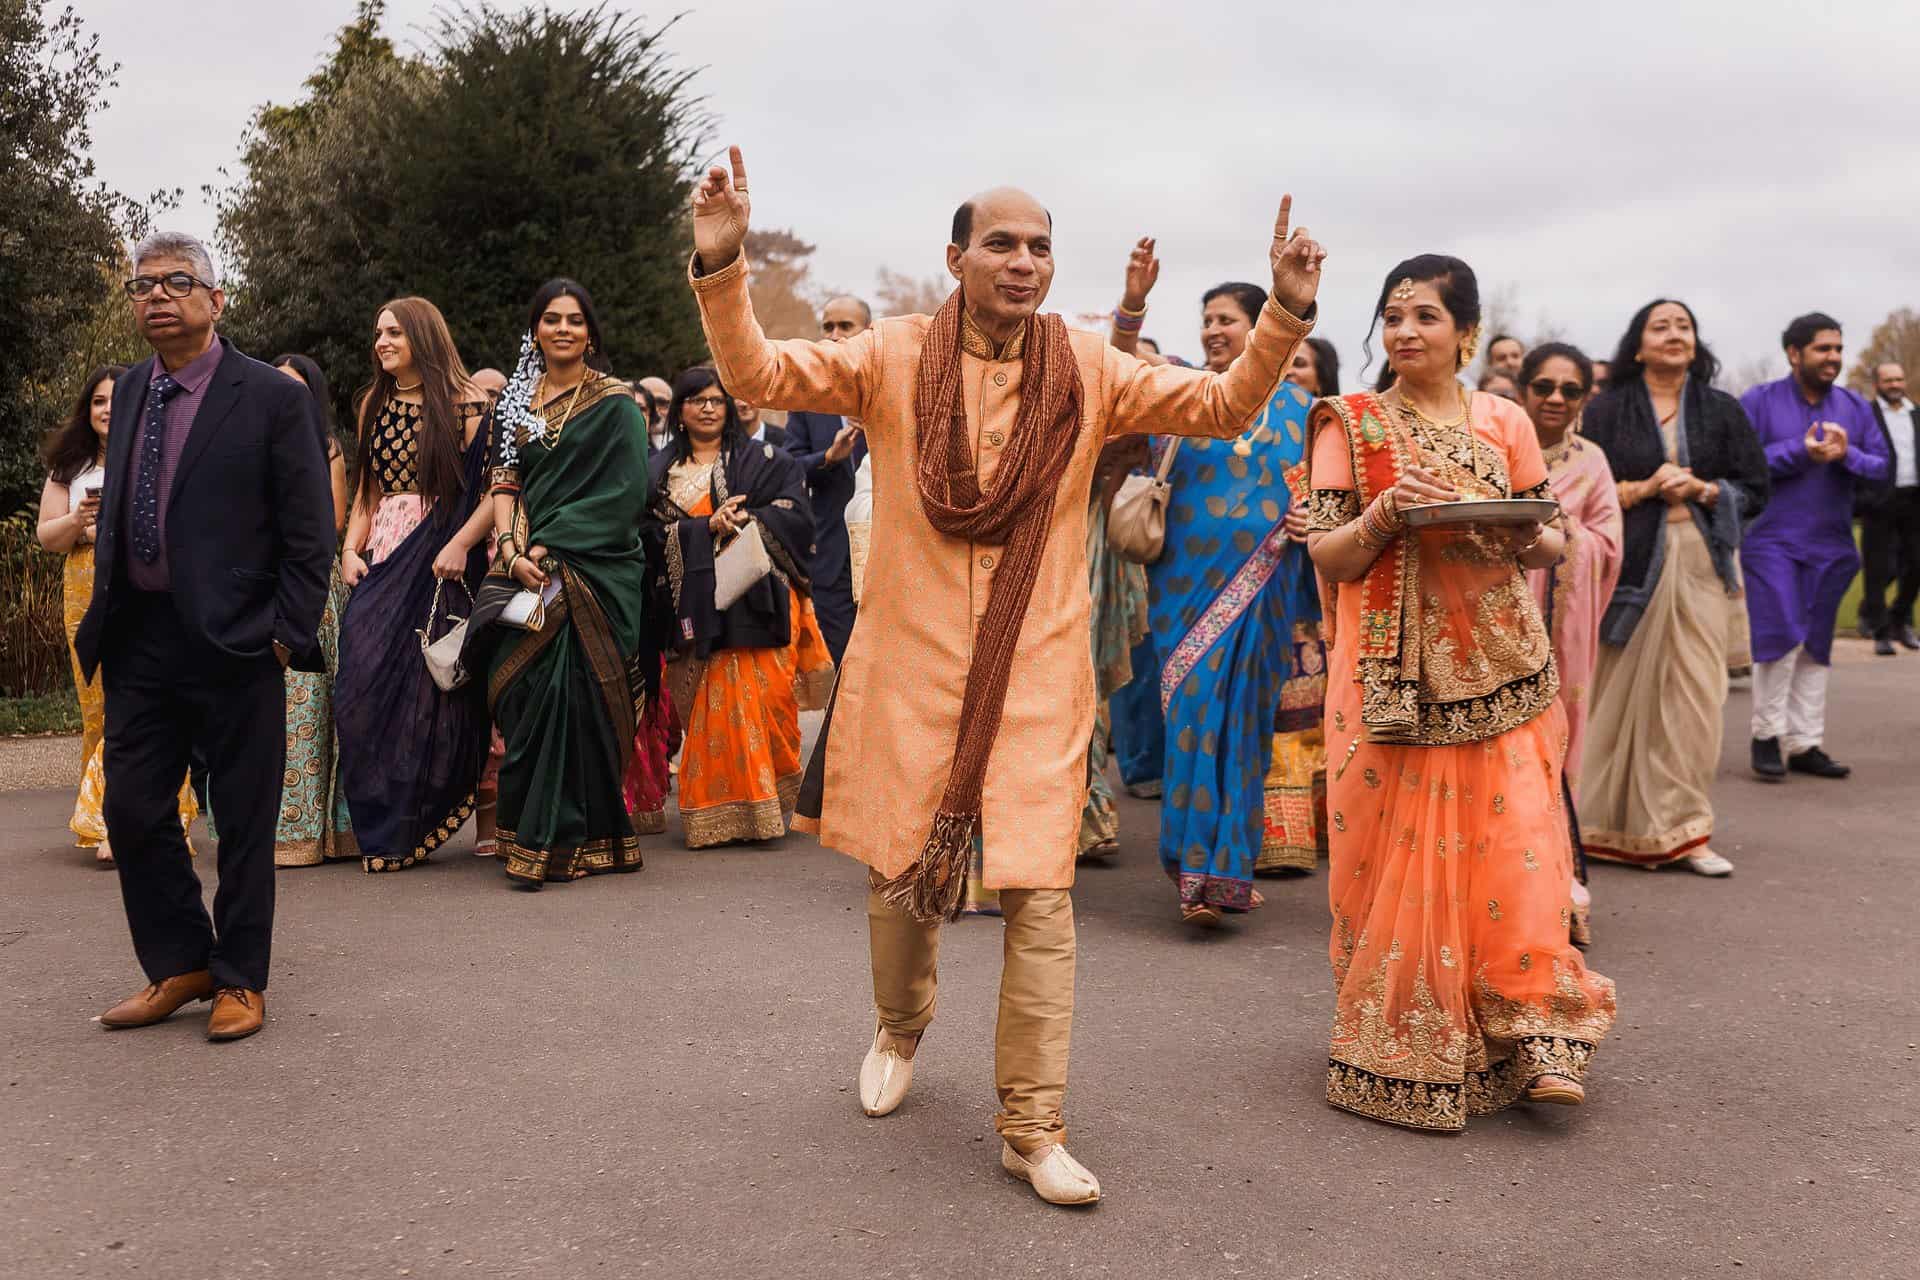 shendish manor hindu wedding photography